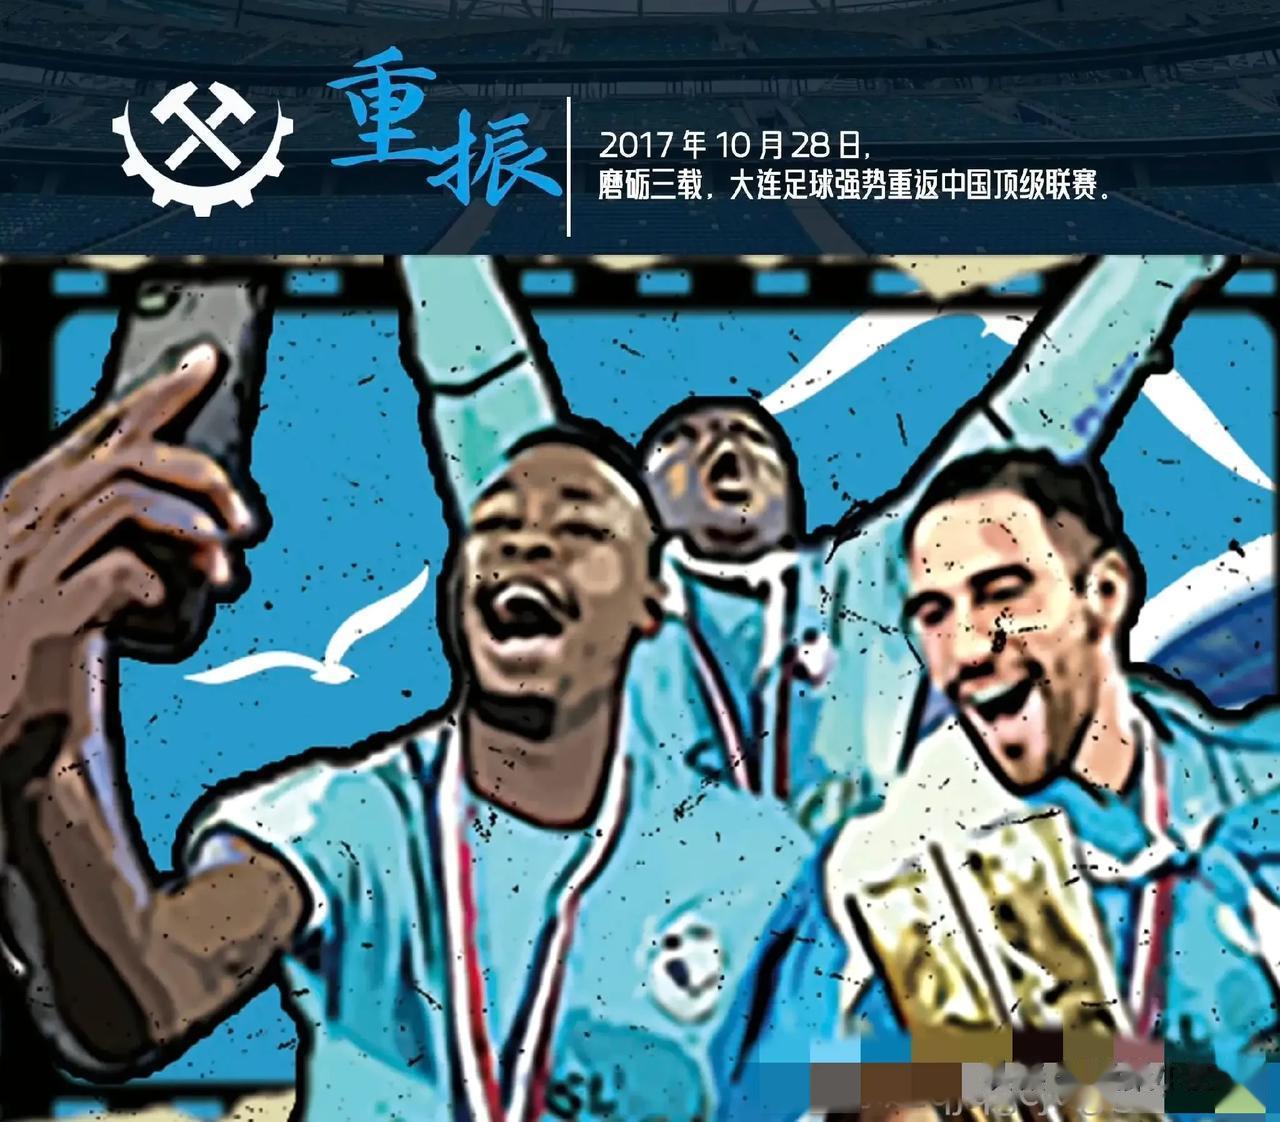 作为中国唯二的足球城，大连的足球底蕴不得不让人钦佩！哪怕是现在排名联赛倒数第一，(5)